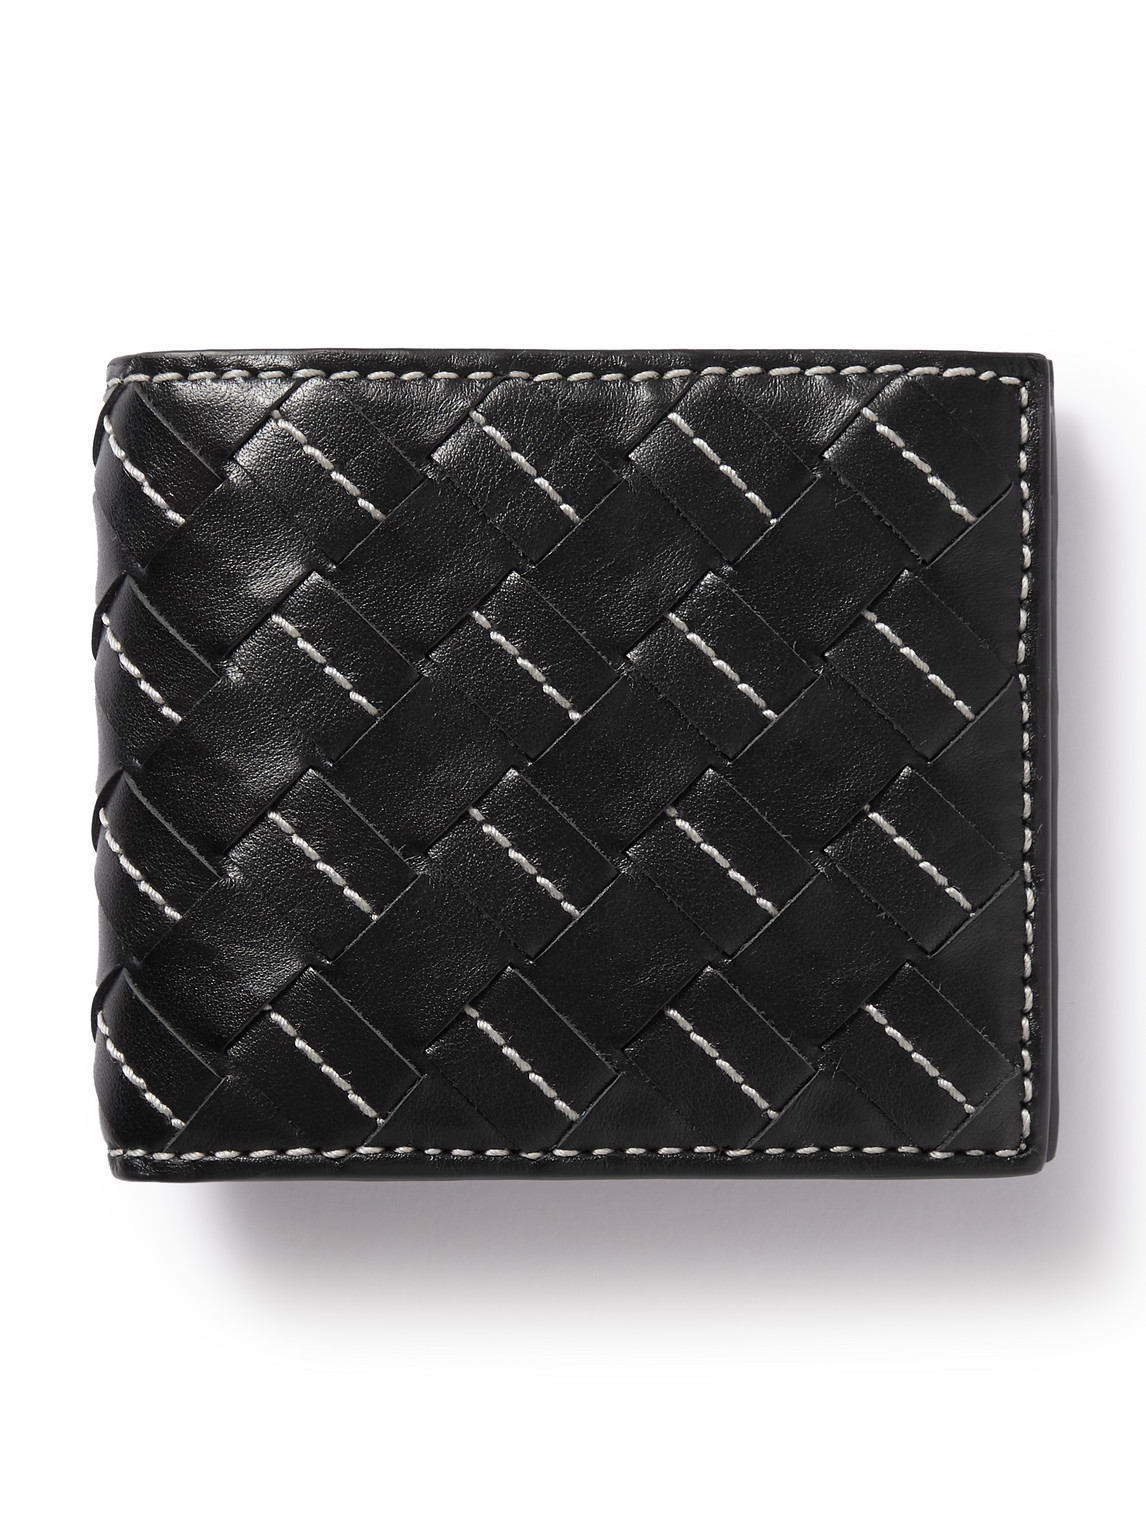 Bottega Veneta Intrecciato Embroidered Leather Billfold Wallet In Black